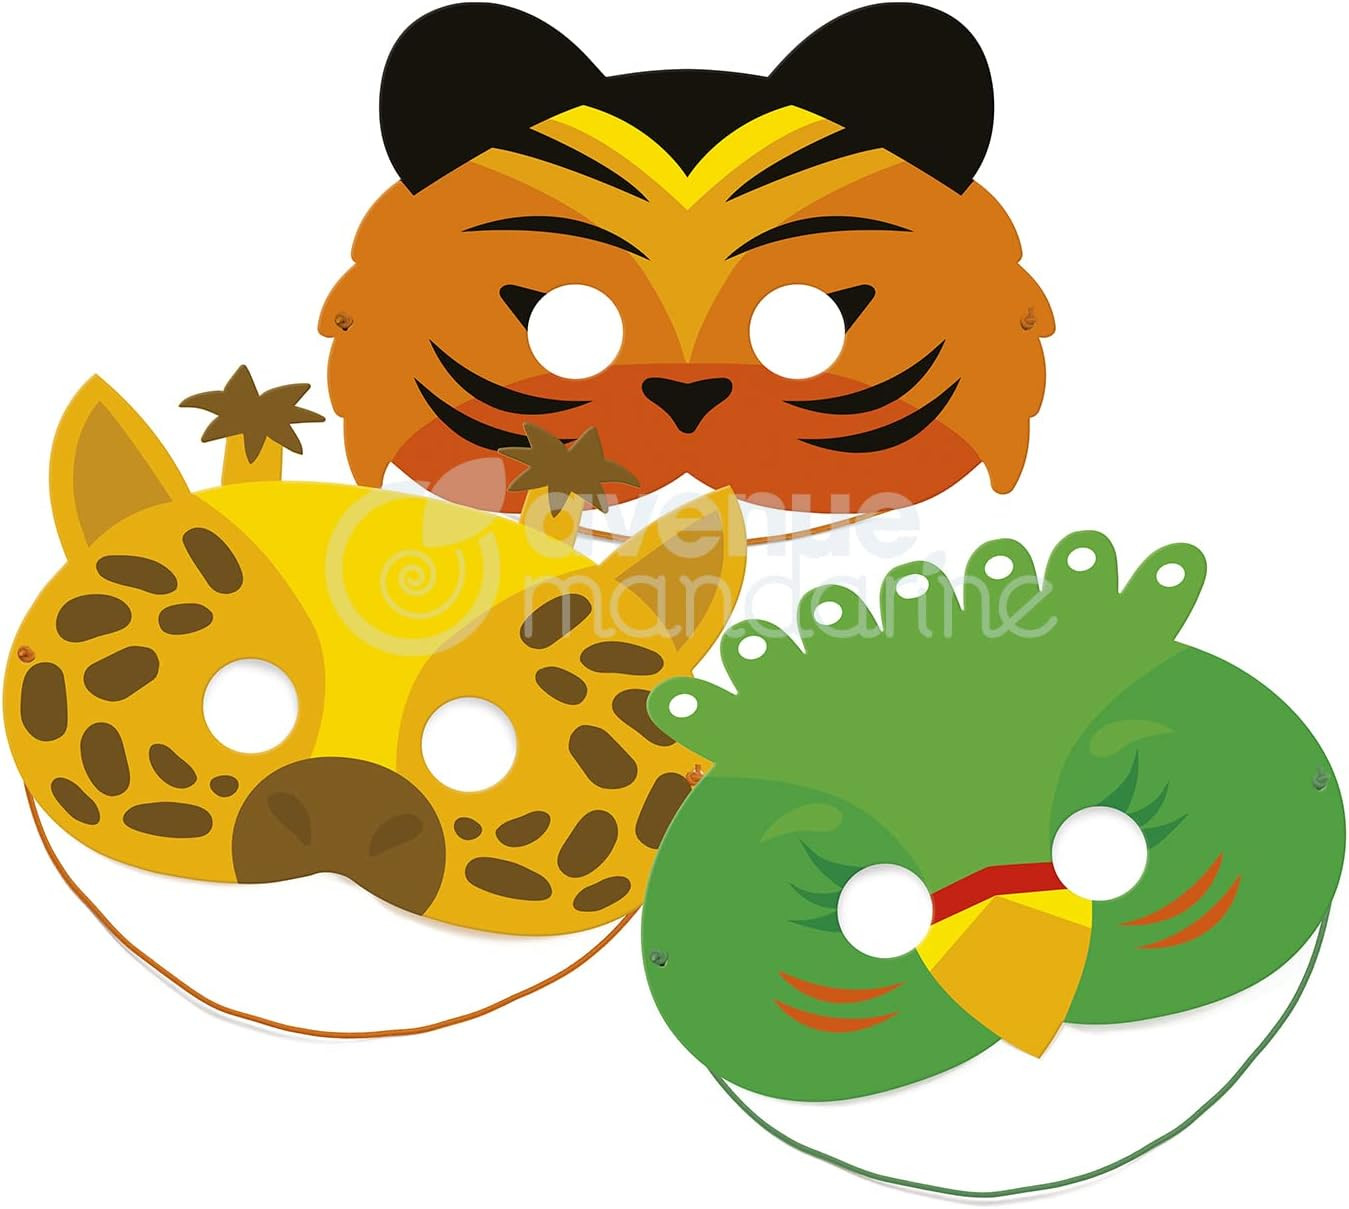 Boite créative de masques à gratter - Animaux de la jungle - L 23